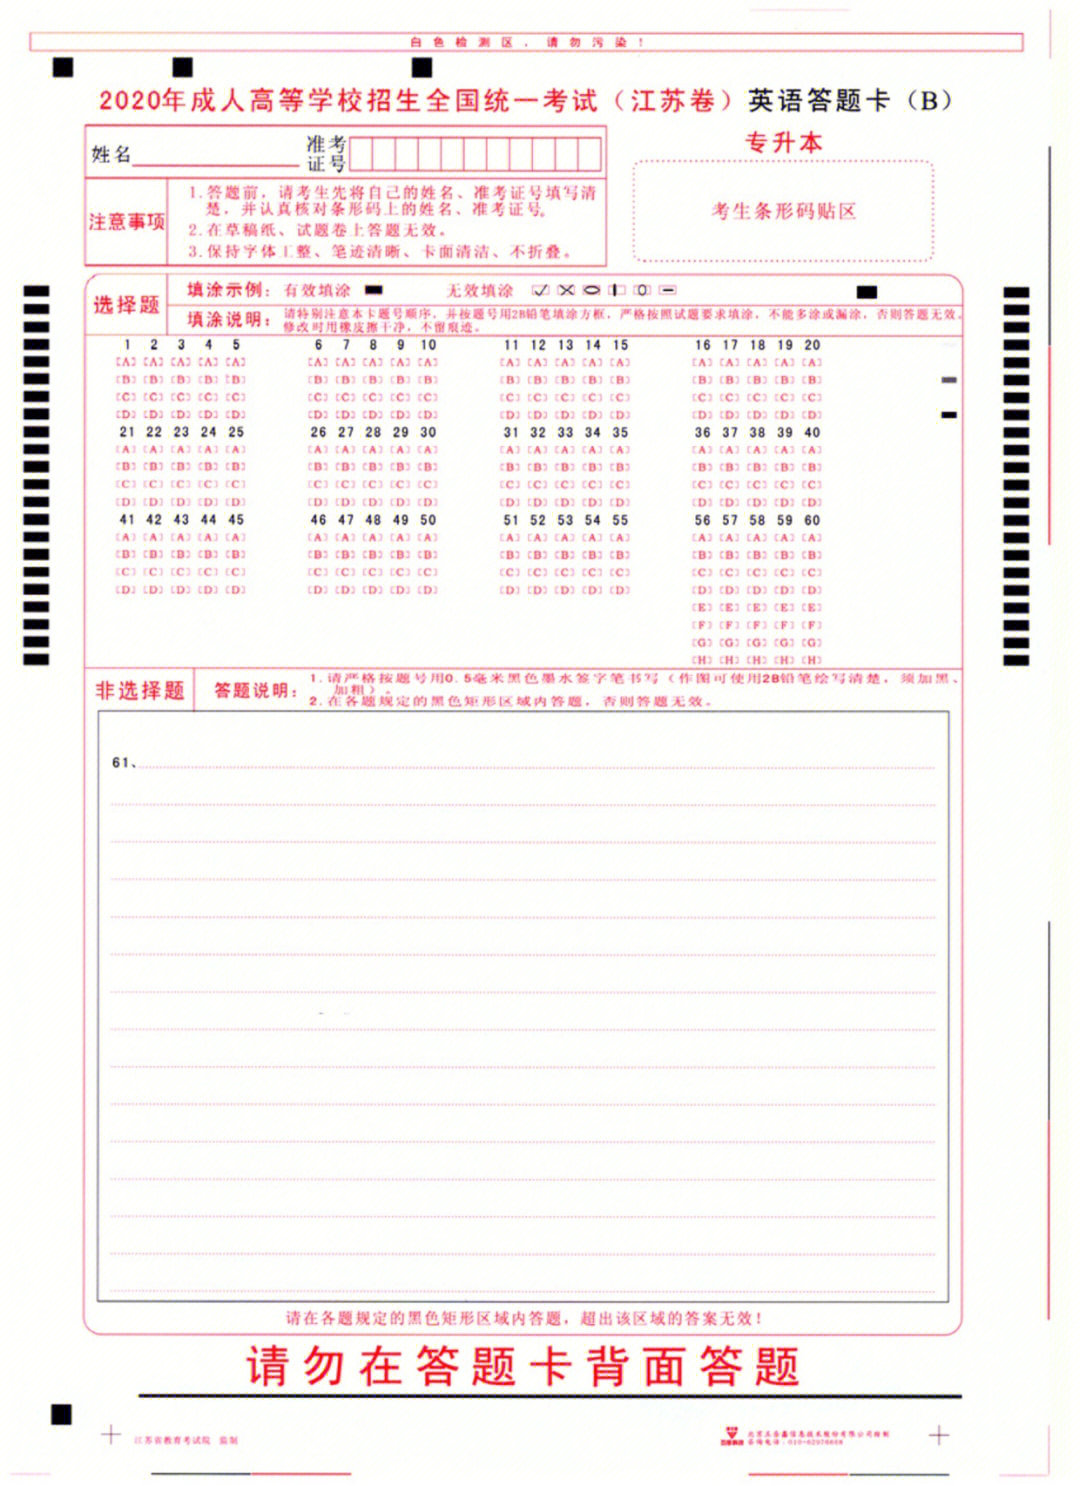 北京自考答题卡图片